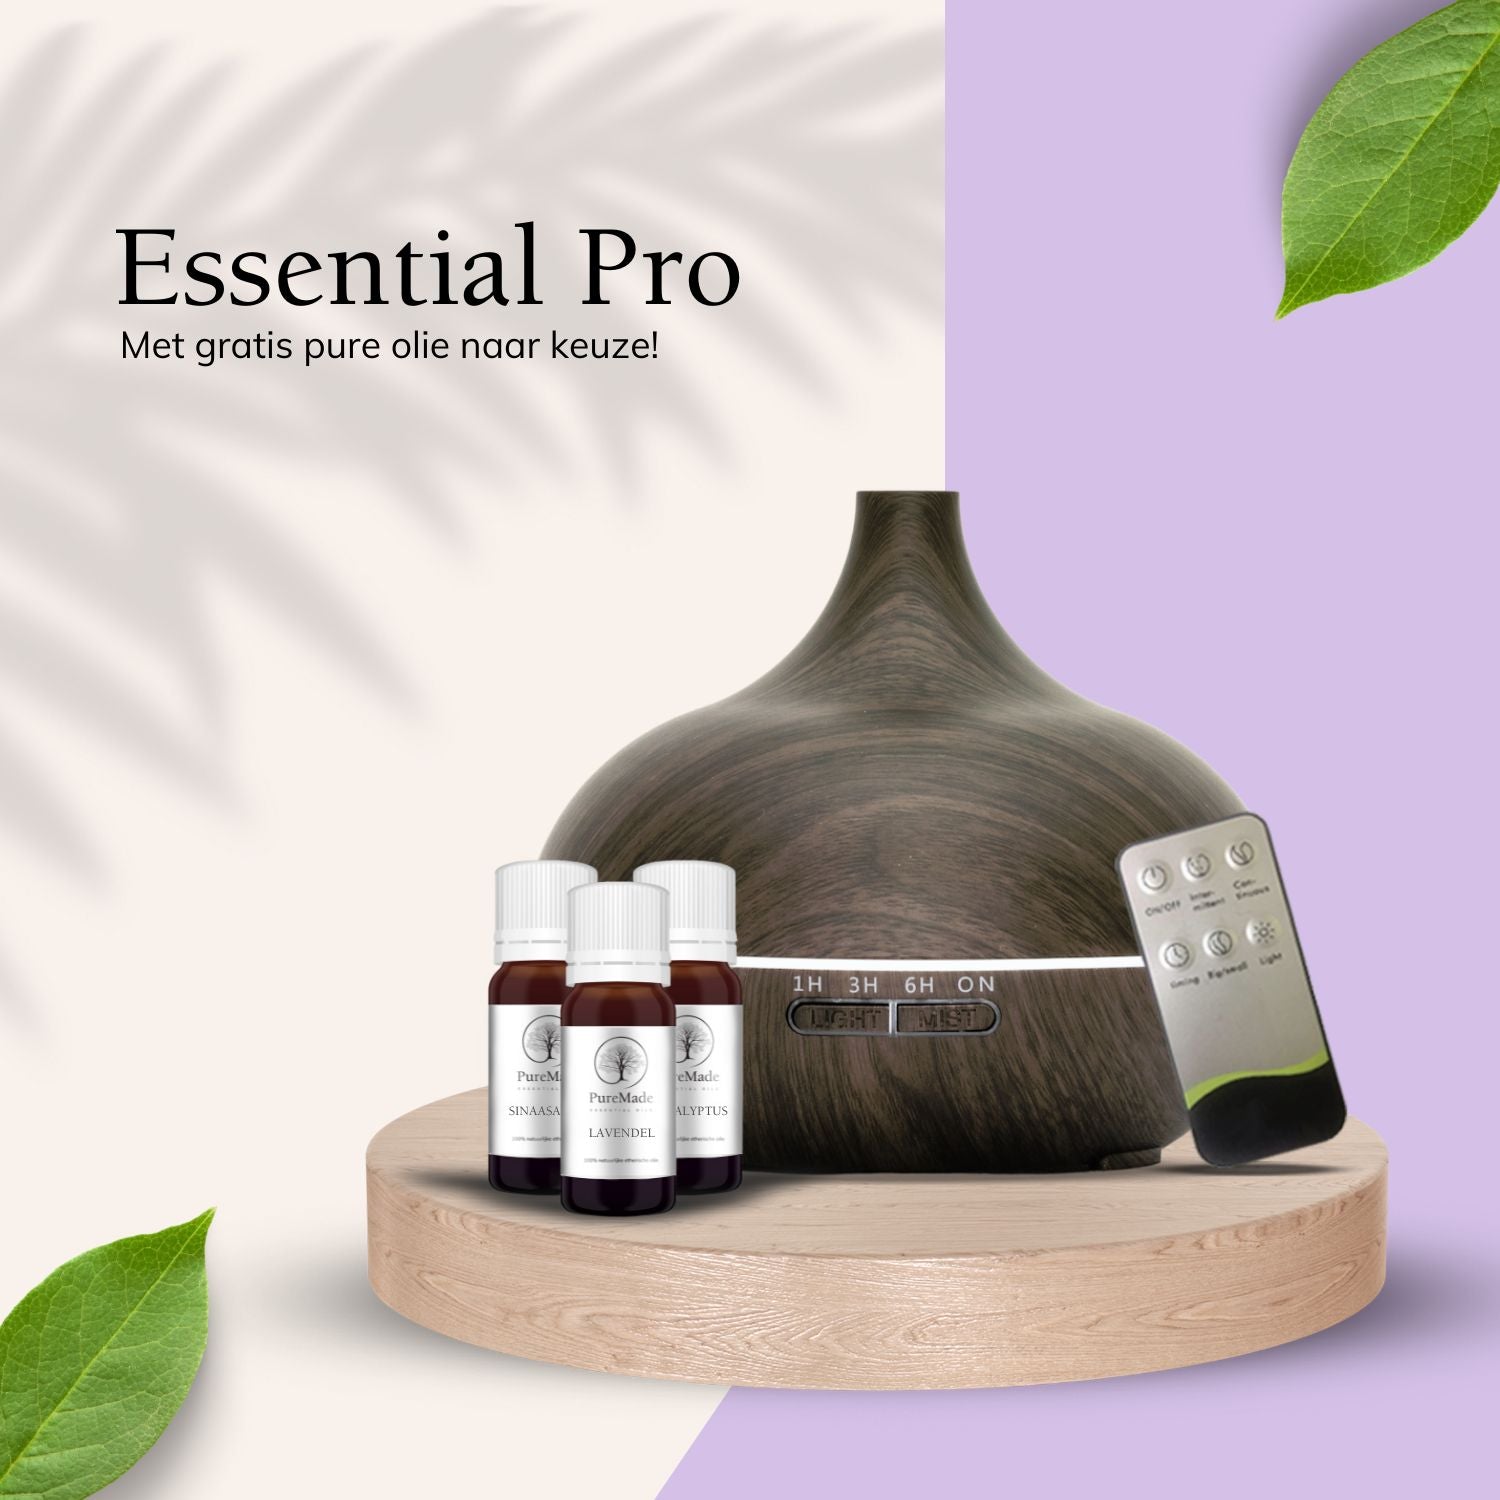 Essential Pro Dark Wood - Aroma Diffuser